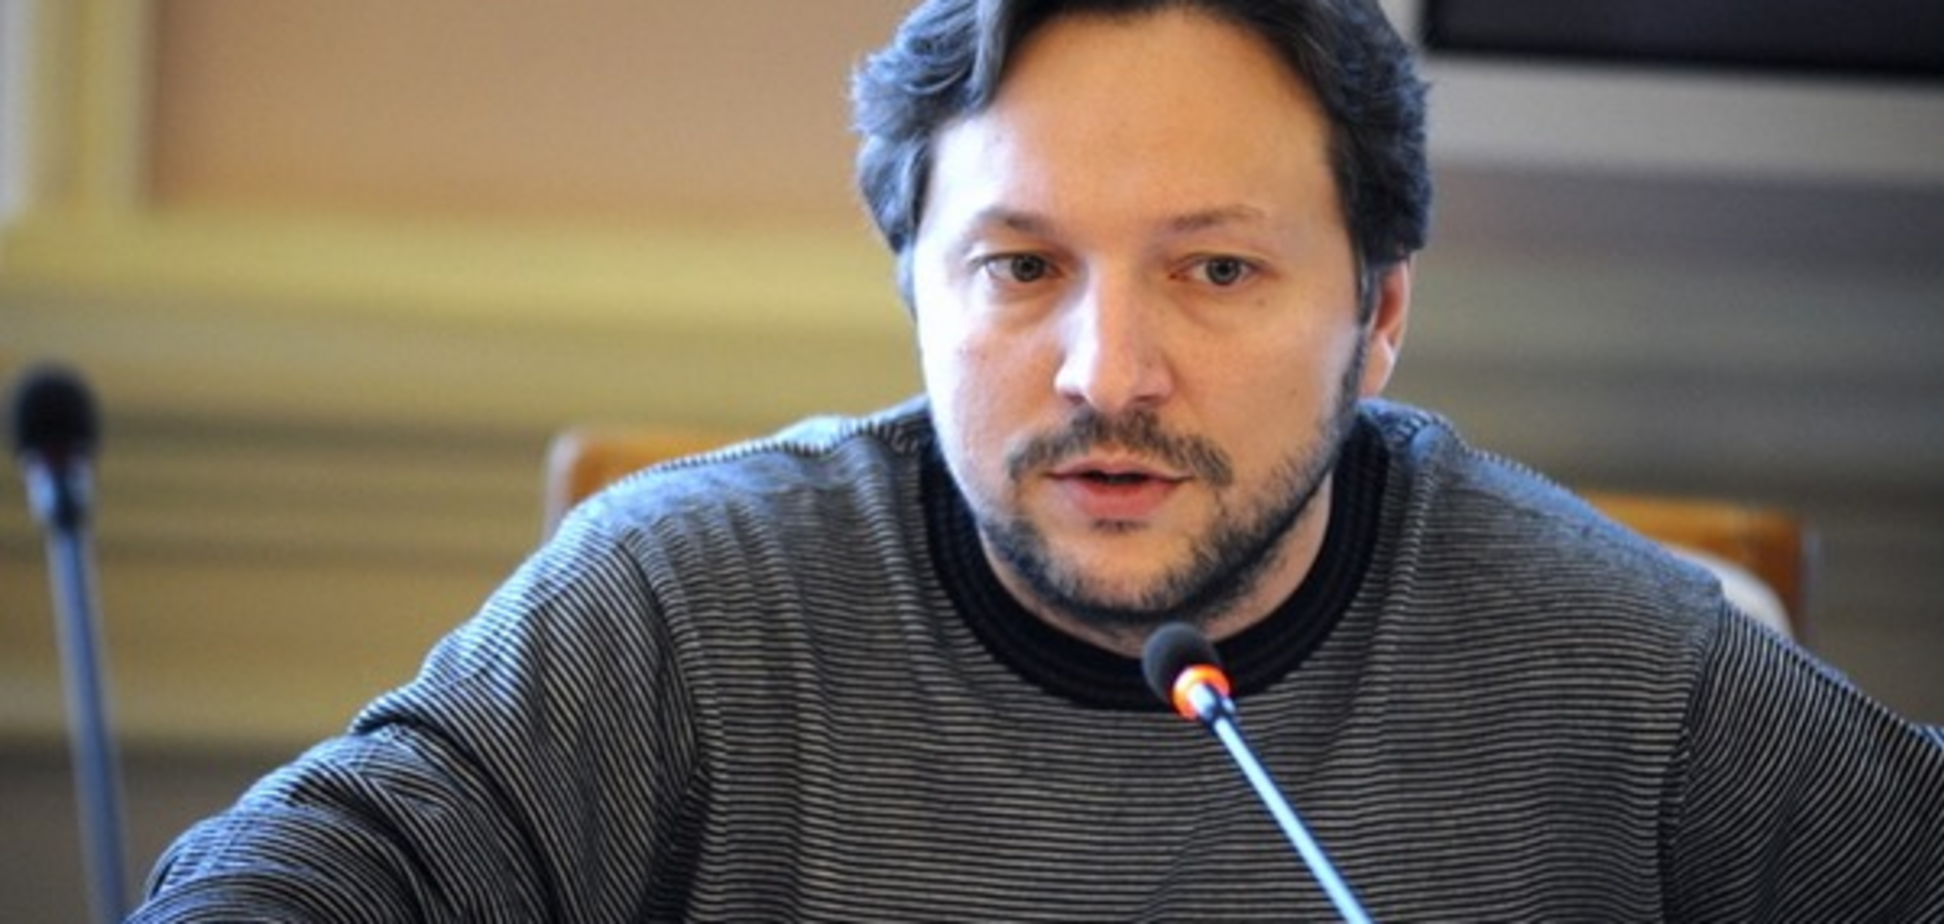 Министр информационной политики Юрий Стець